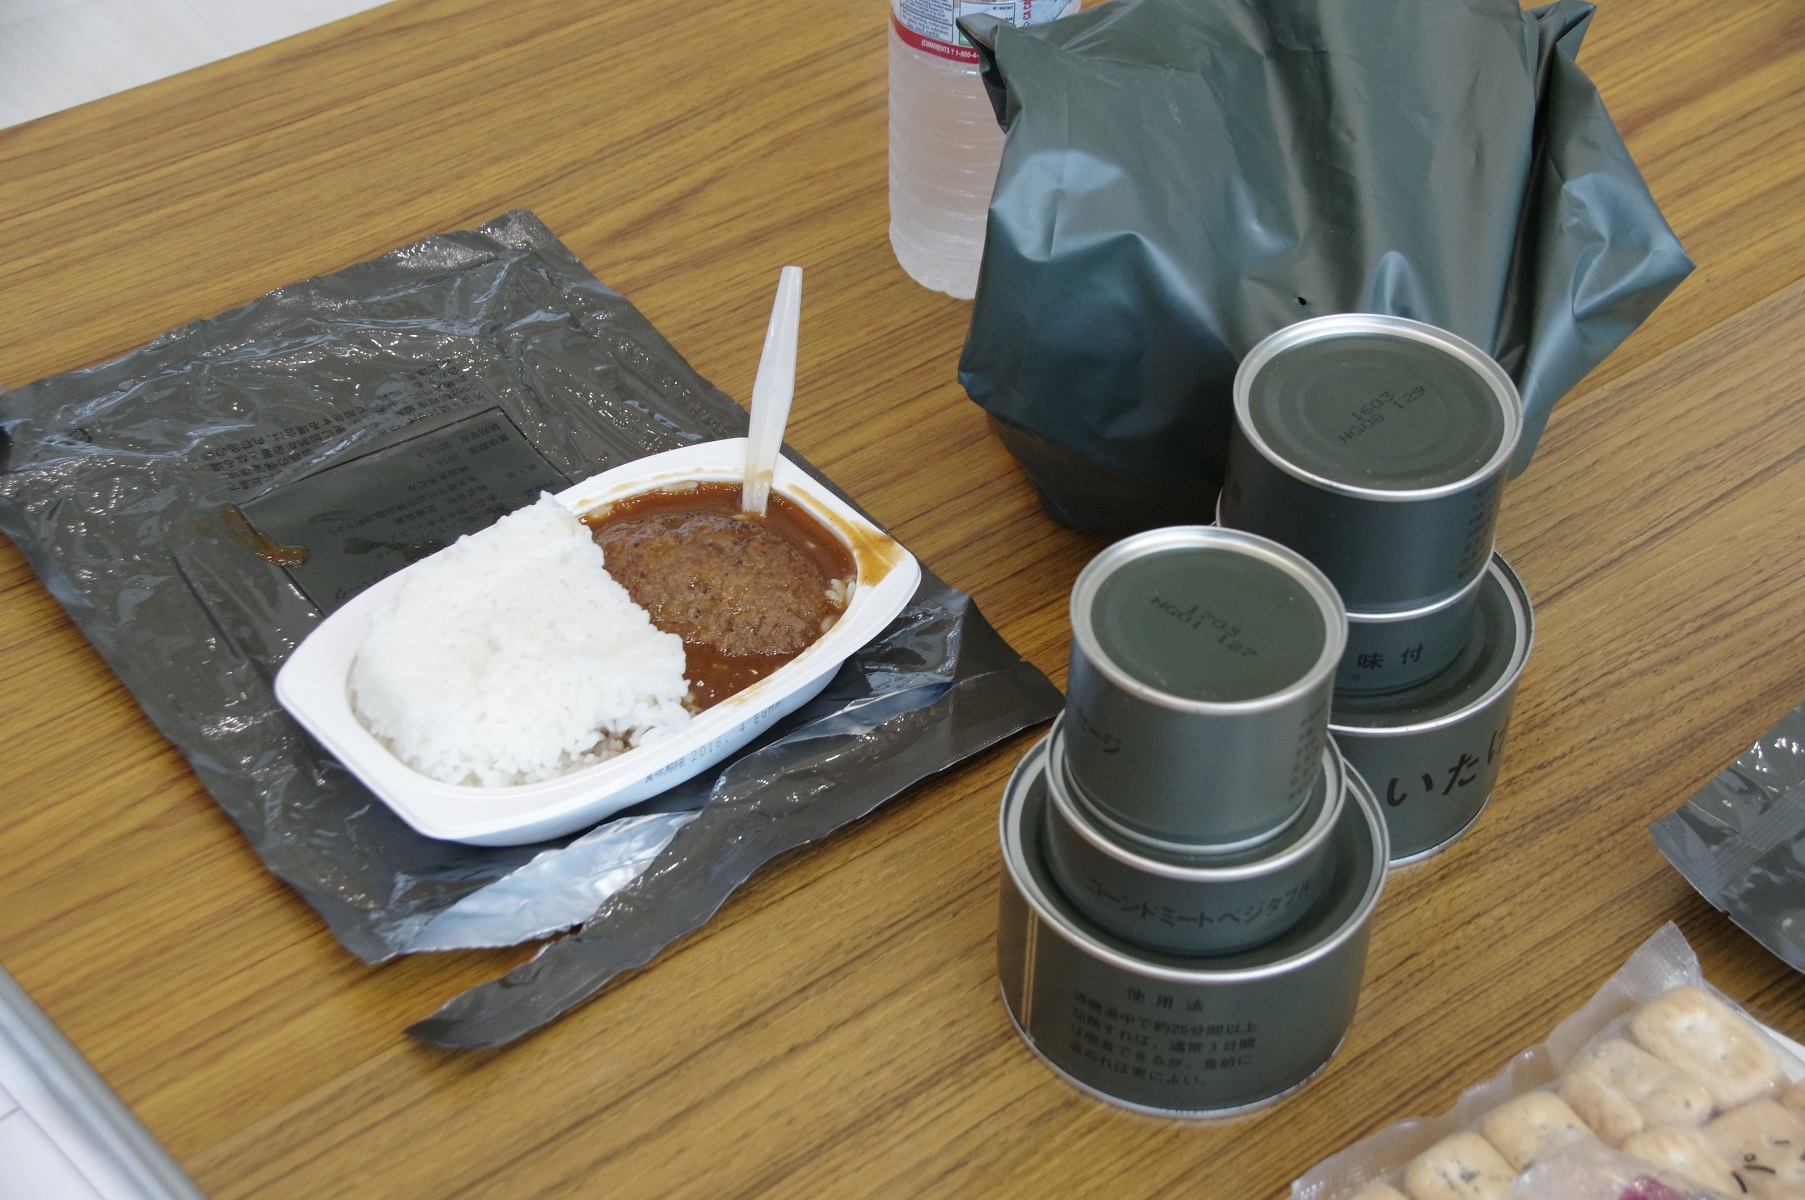 防人の食事 自衛隊の 食 について 装備 戦闘糧食等 陸自調査団